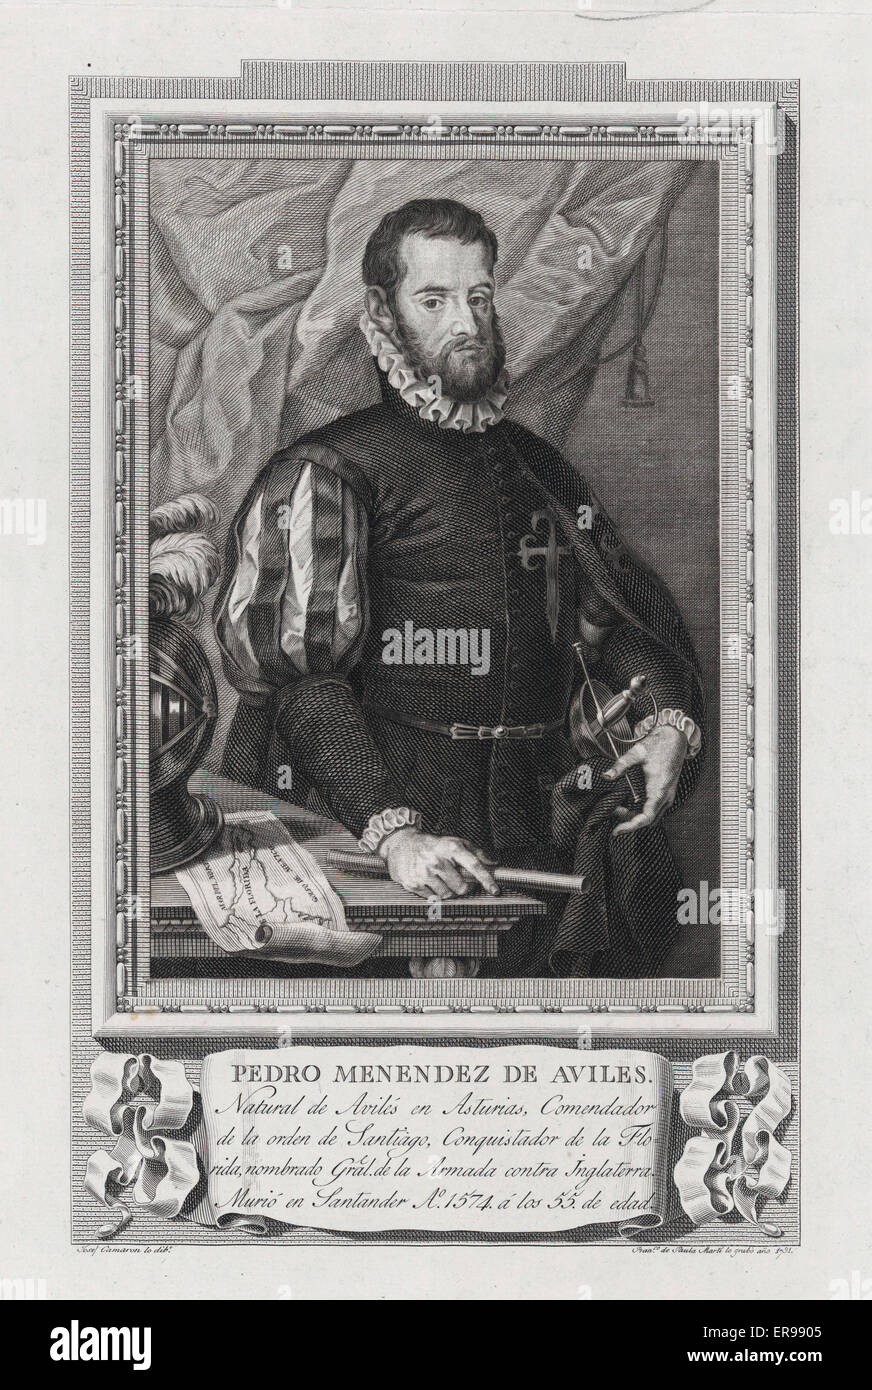 Pedro Menendez de Aviles. A mezza lunghezza ritratto, in piedi, rivolto verso destra. Data 1791. Foto Stock